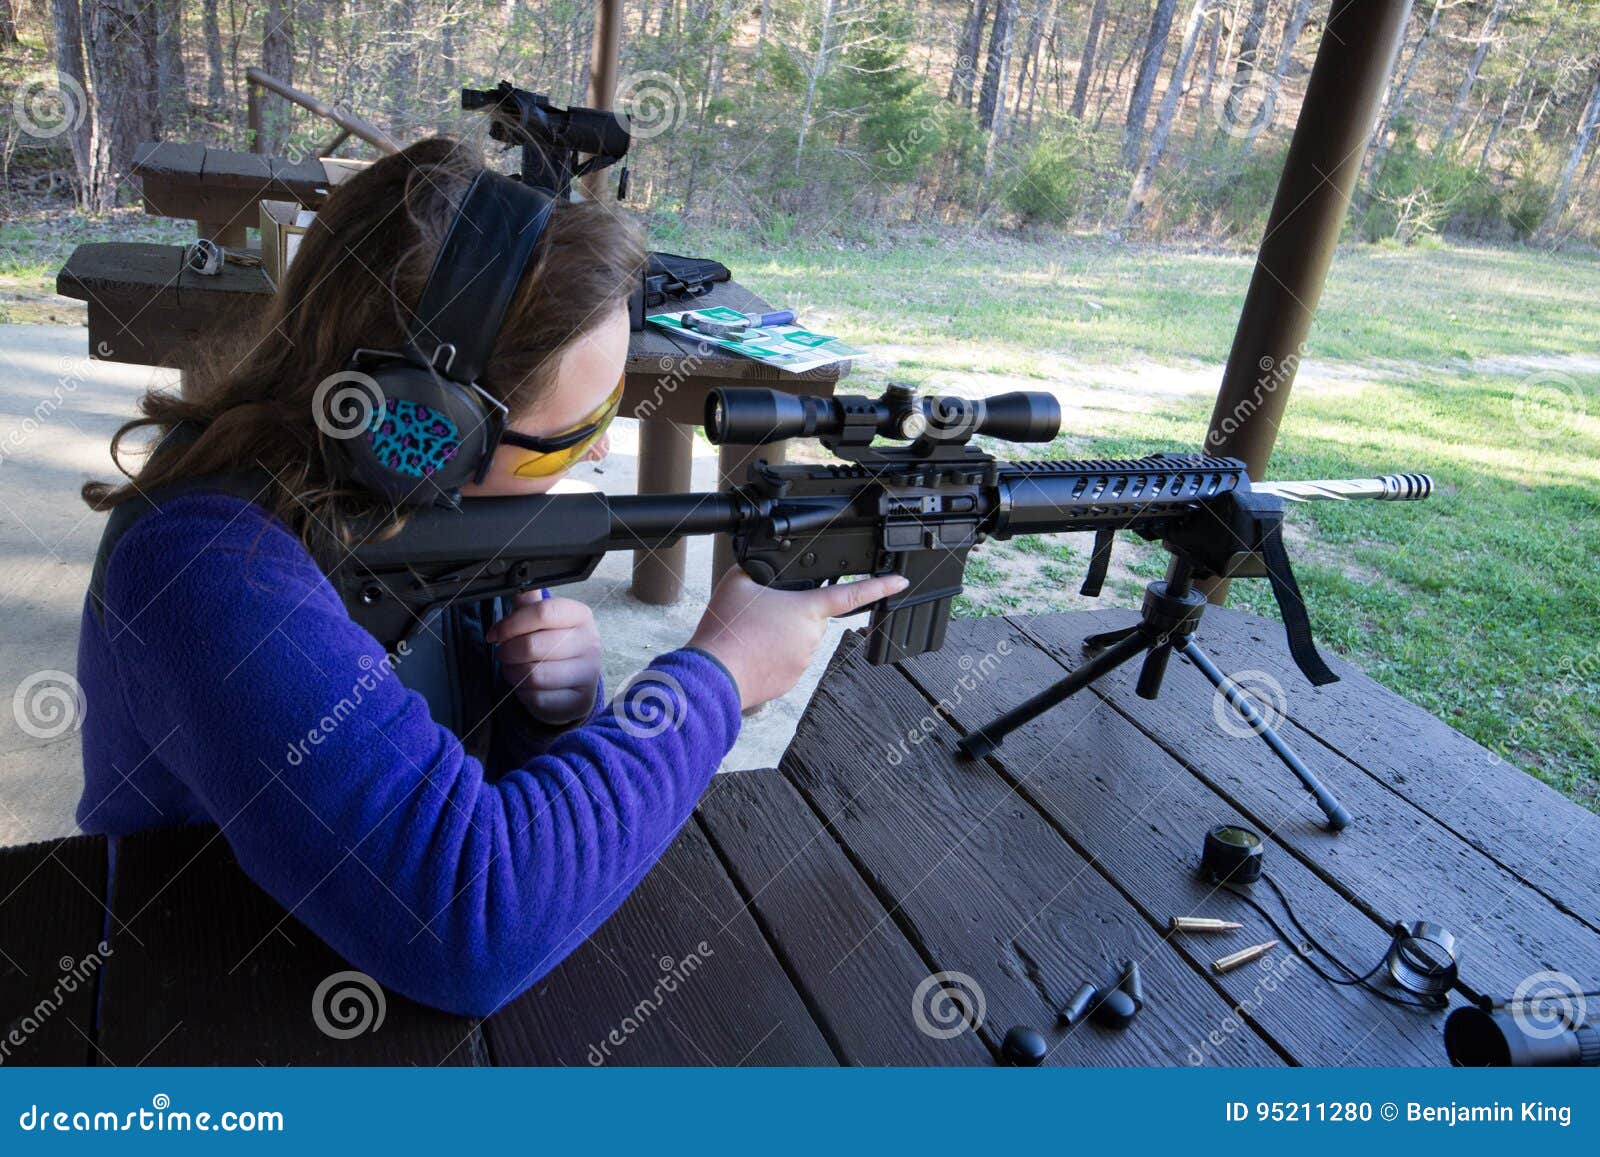 teenager at shooting range